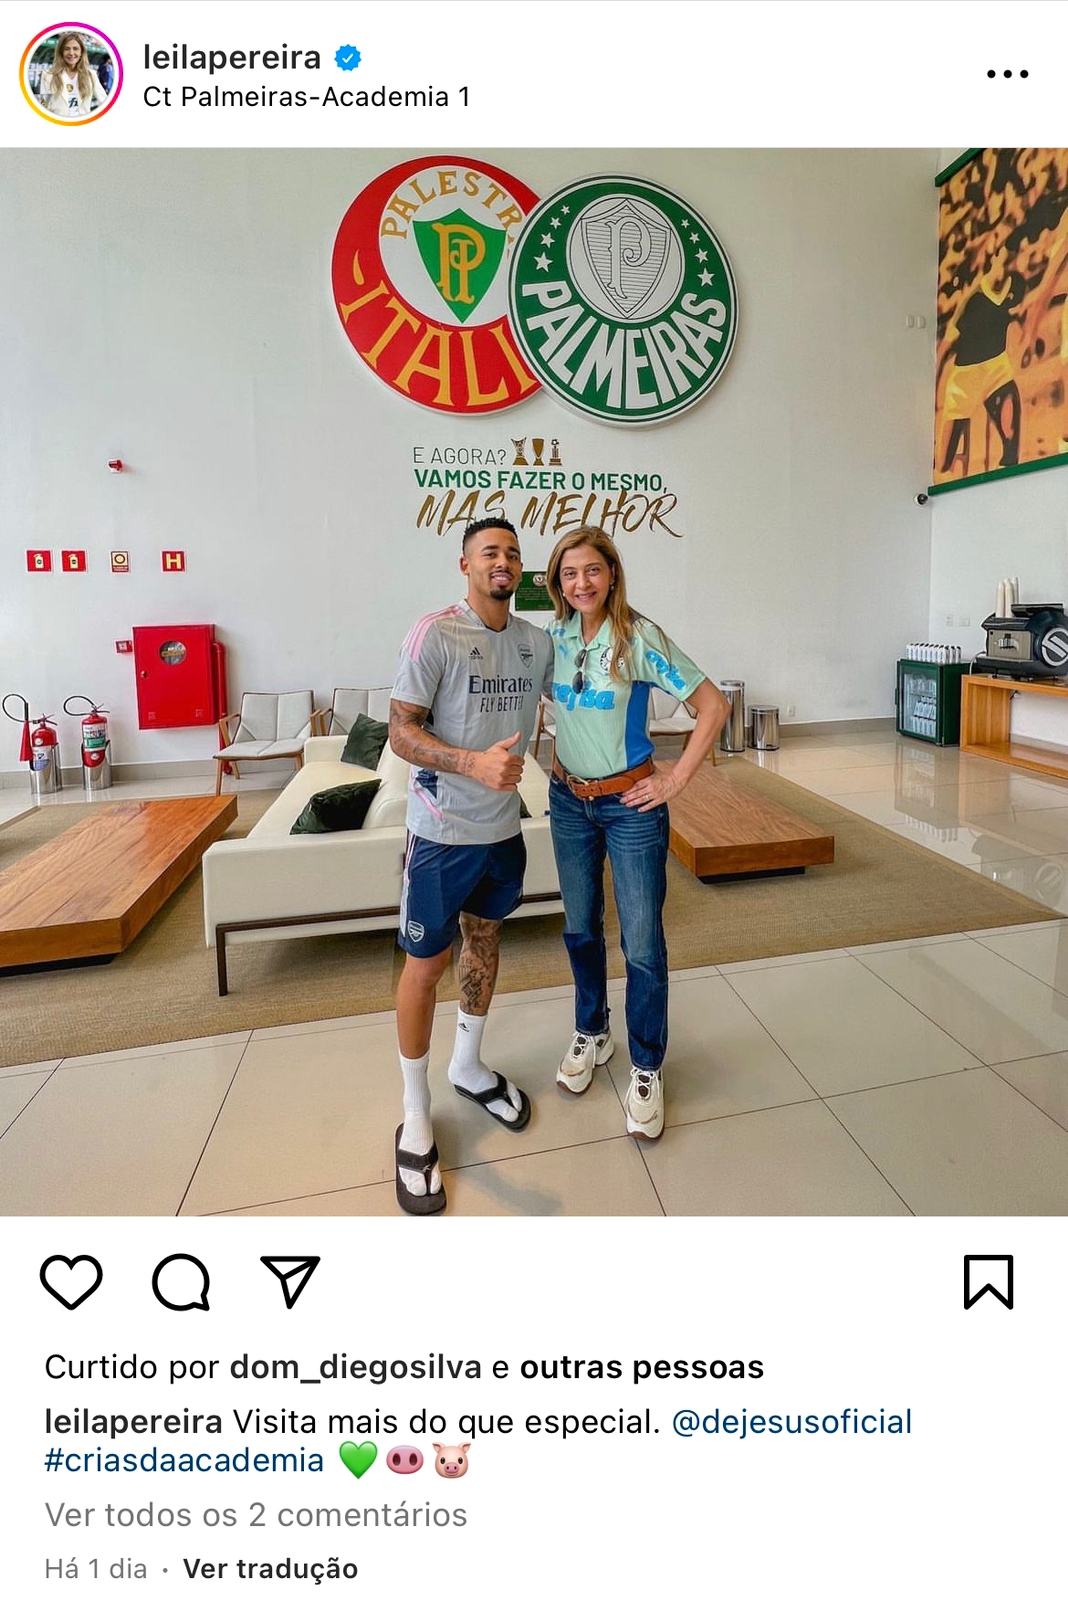 Presidente do Palmeiras, Leila Pereira, postou foto com Gabriel Jesus durante a visita. Foto: Reprodução/Instagram